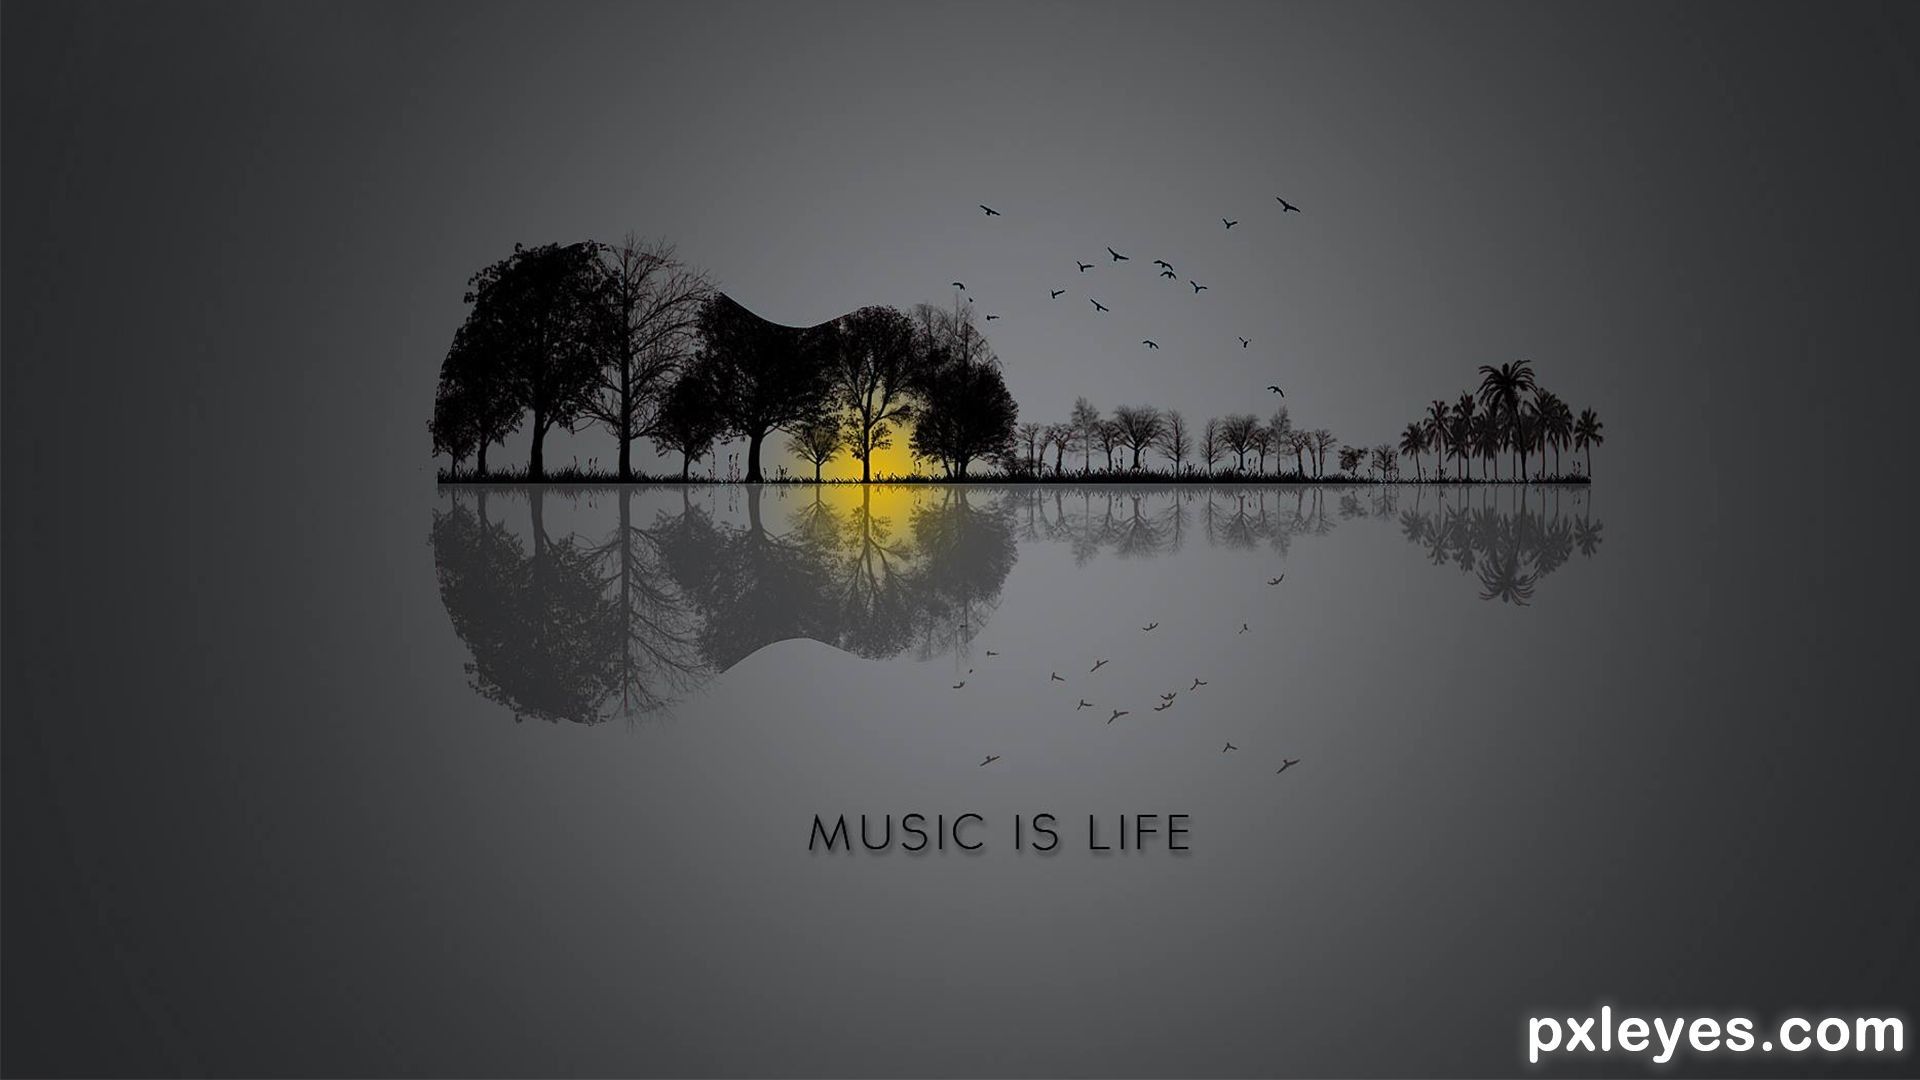 Music life 1. Music is Life. Music is my Life картинка. Музыка жизни. Music my Life обои.